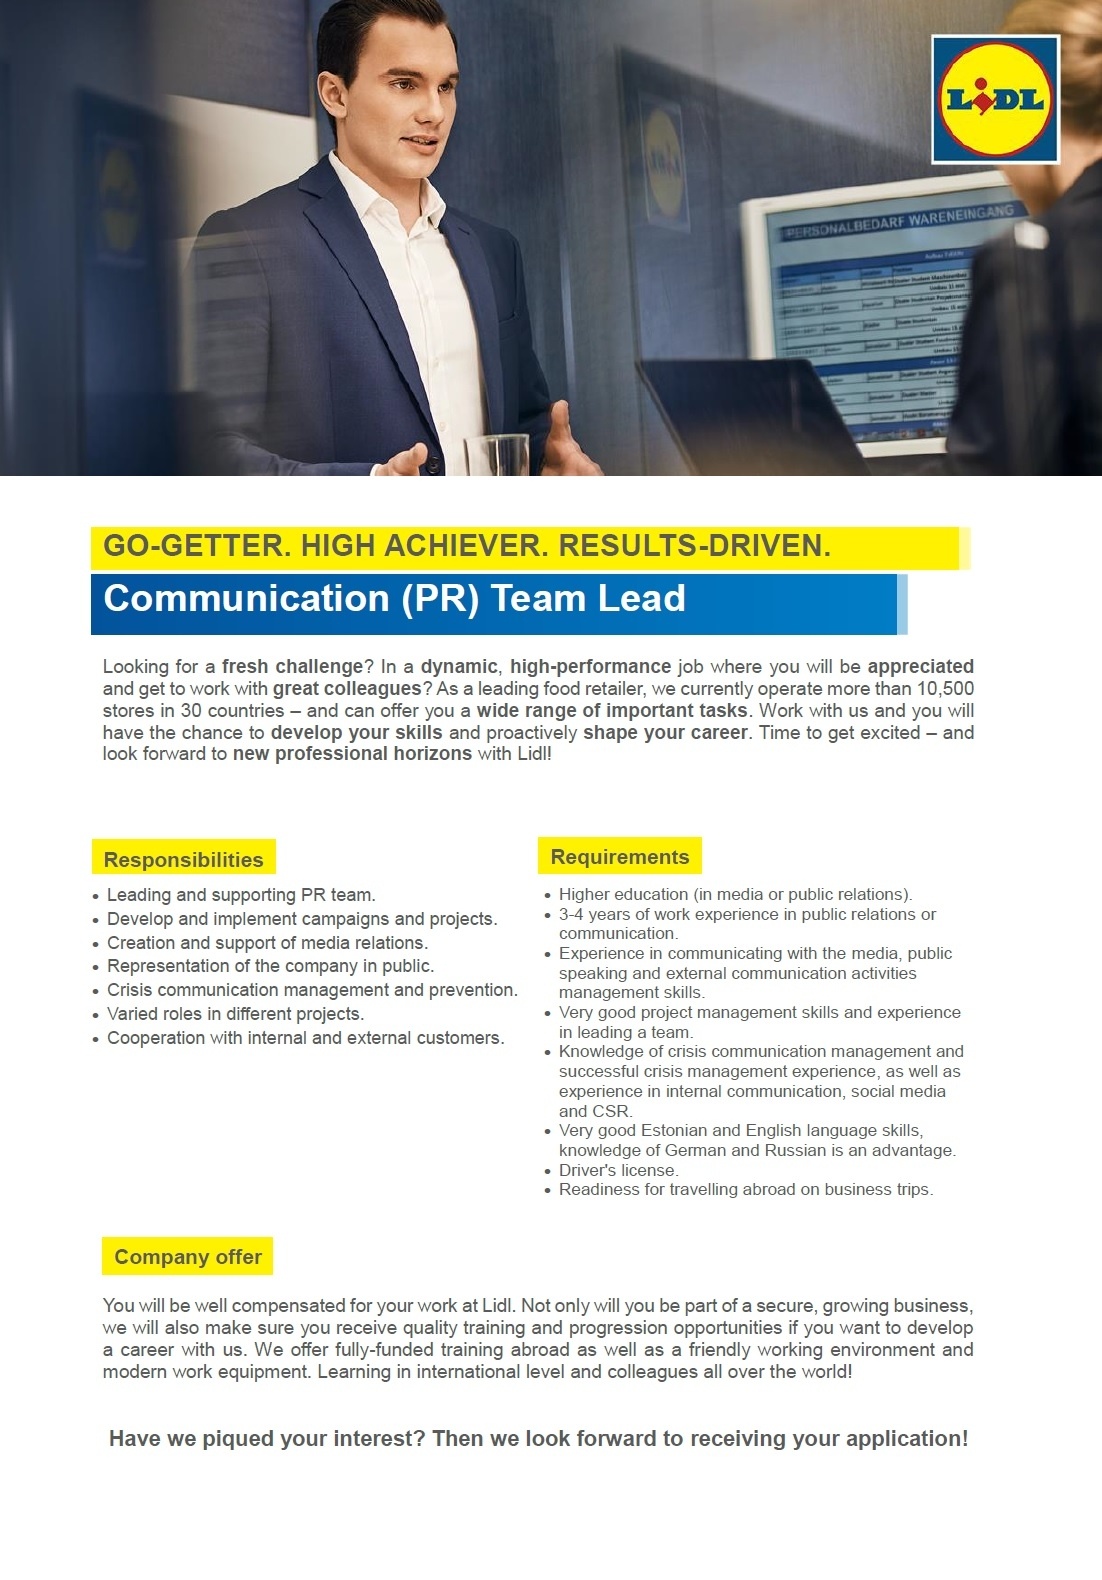 Lidl Eesti OÜ Communication (PR) Team Lead